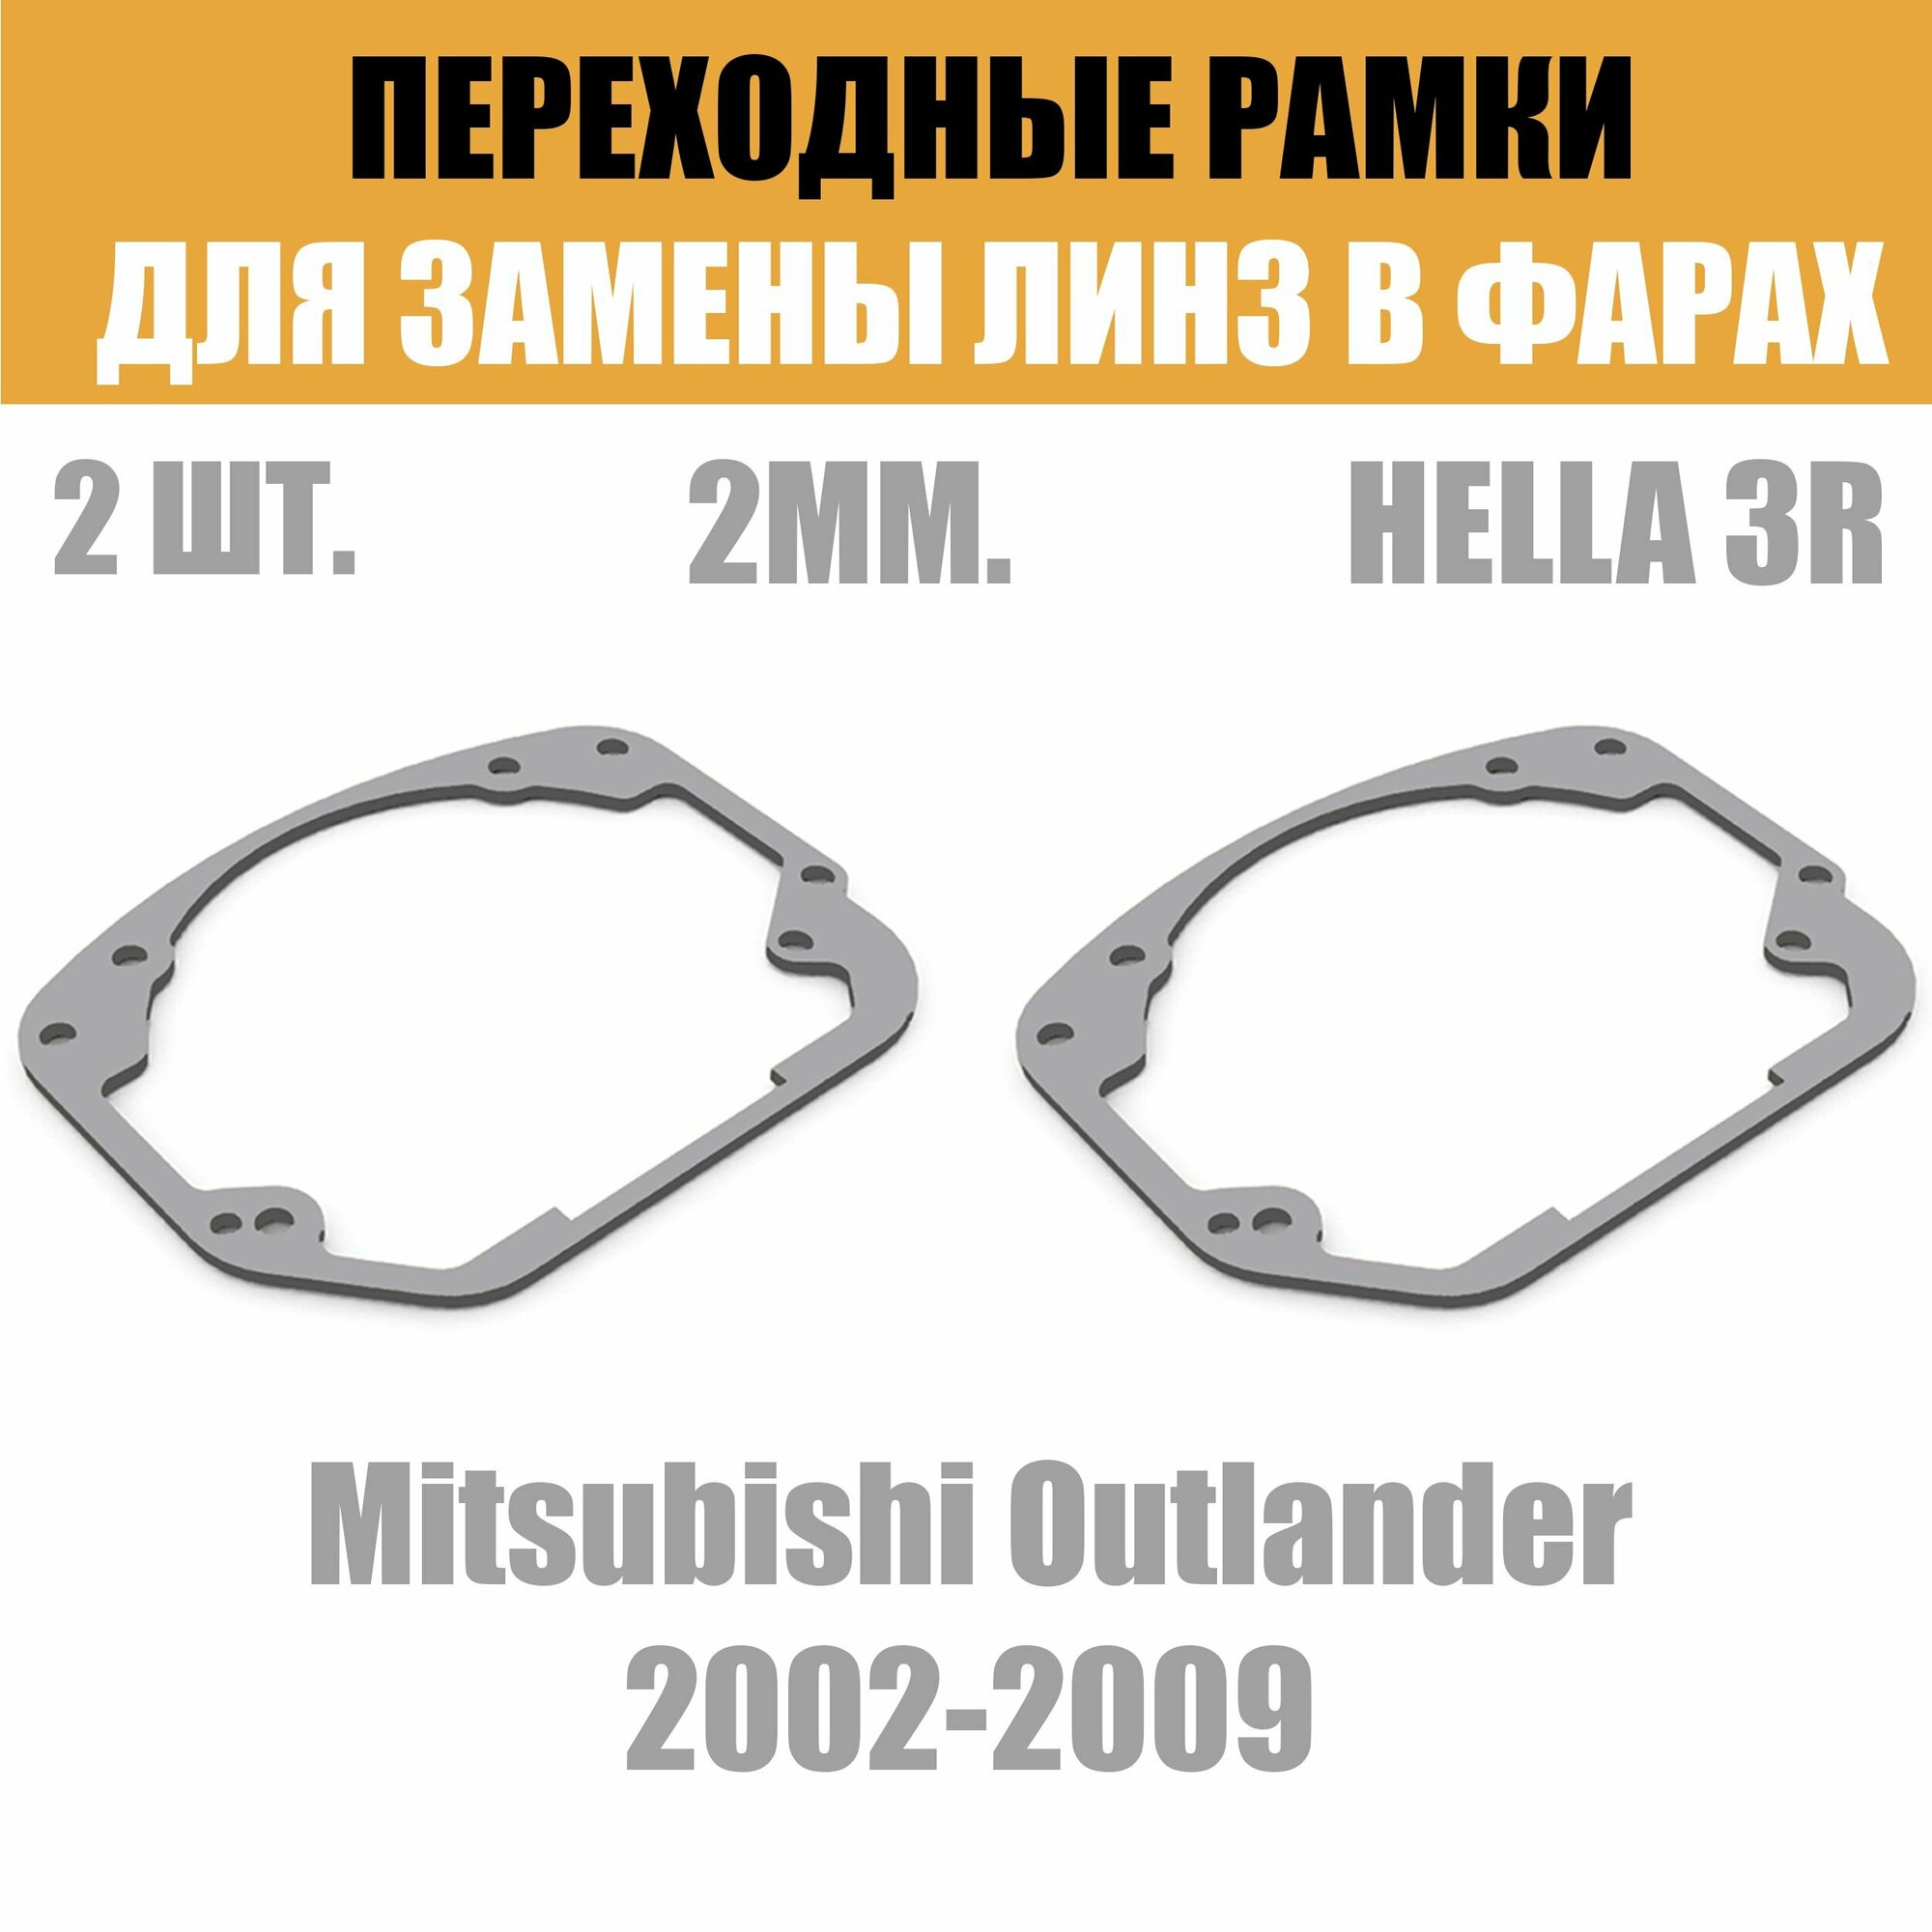 Переходные рамки для линз №24 на Mitsubishi Outlander 2002-2009 под модуль Hella 3R/Hella 3 (Комплект 2шт)